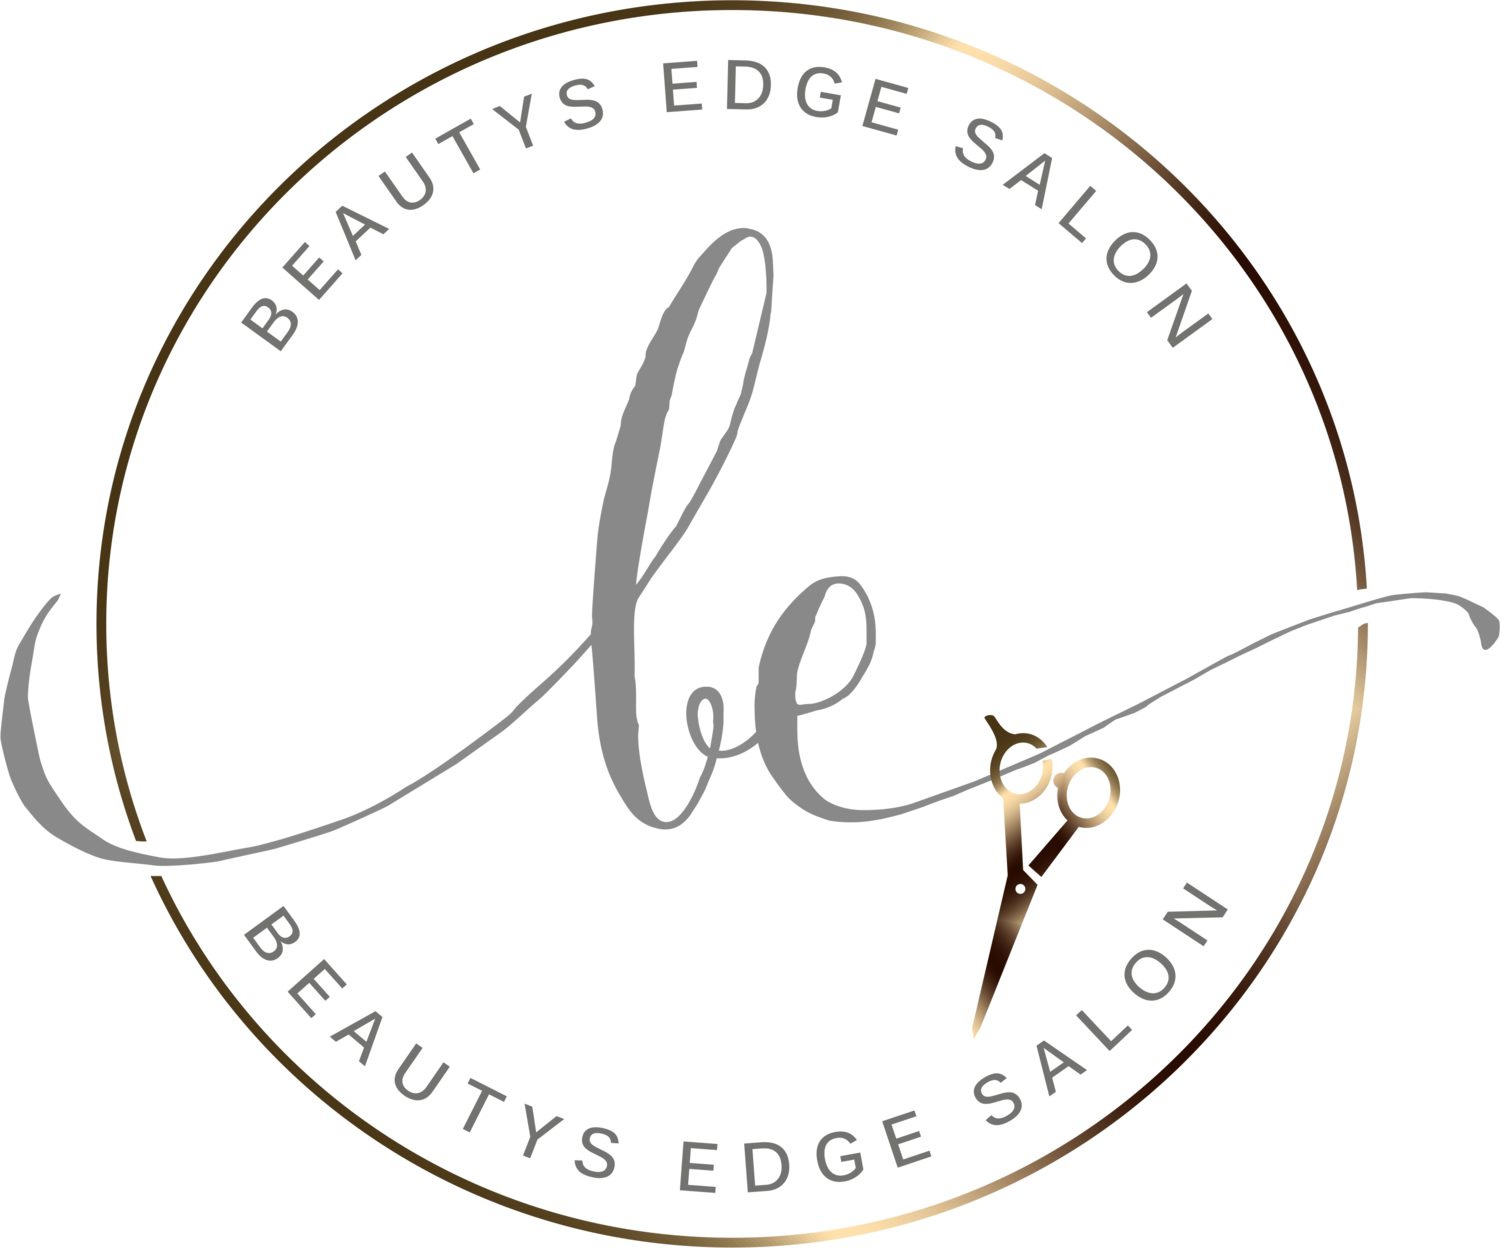 Beautys Edge Salon